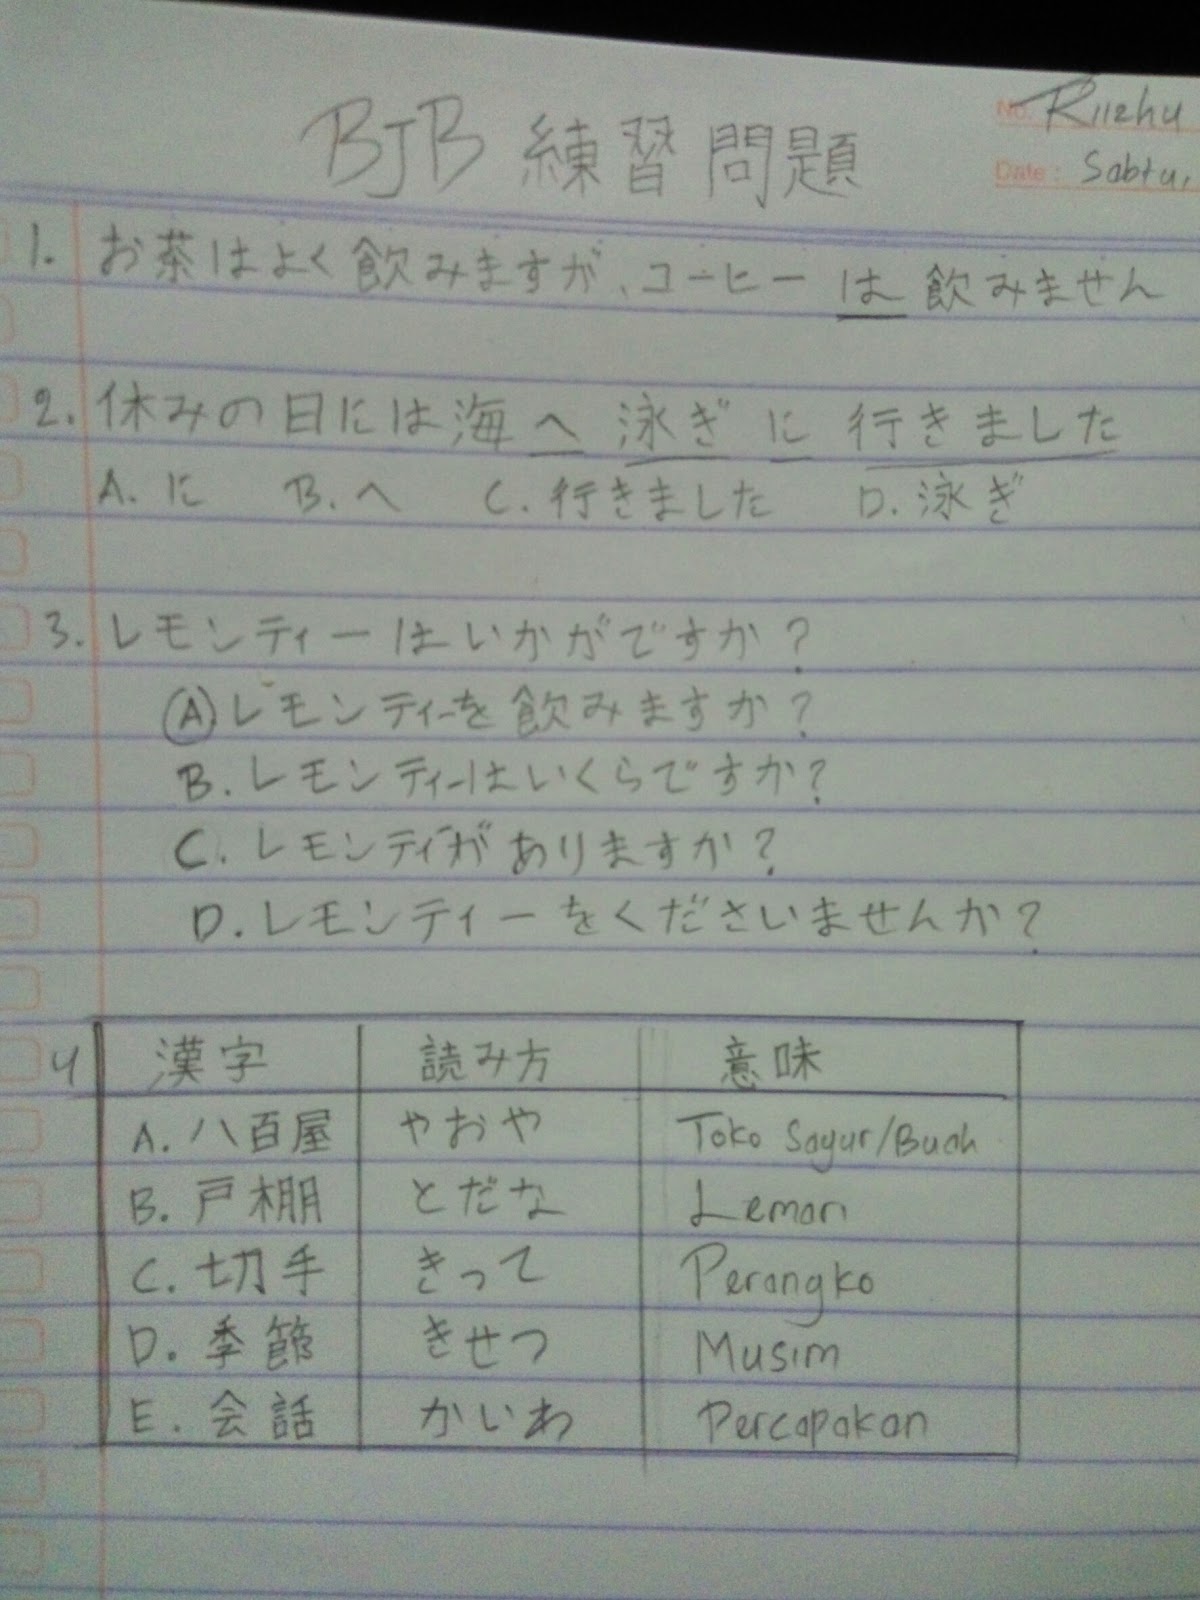 Soal Bahasa Jepang Kelas 12 Dan Jawabannya Revisi Sekolah